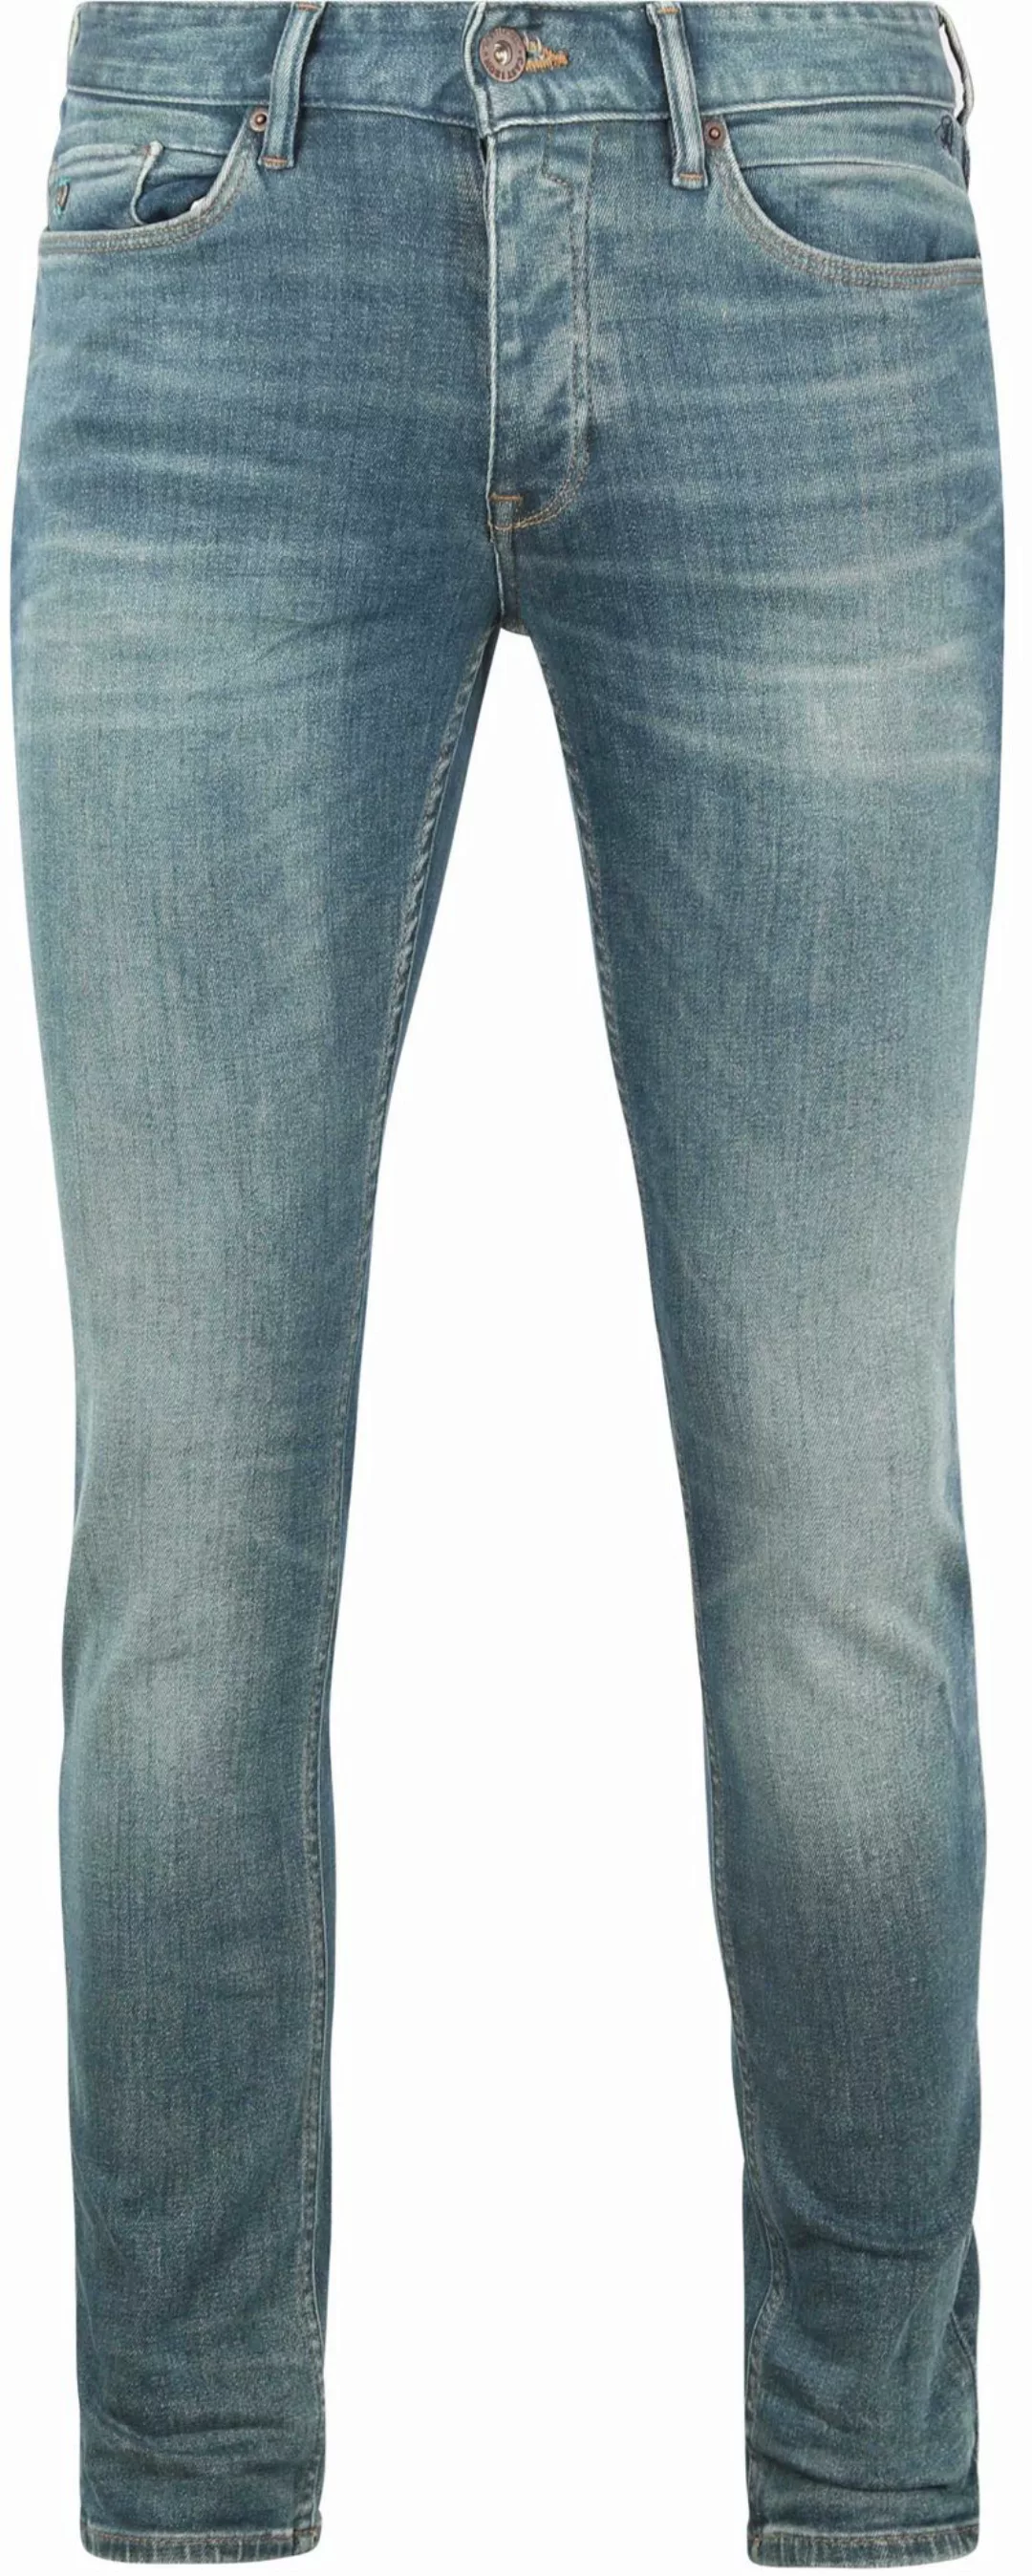 Cast Iron Riser Jeans Hellblau - Größe W 31 - L 34 günstig online kaufen